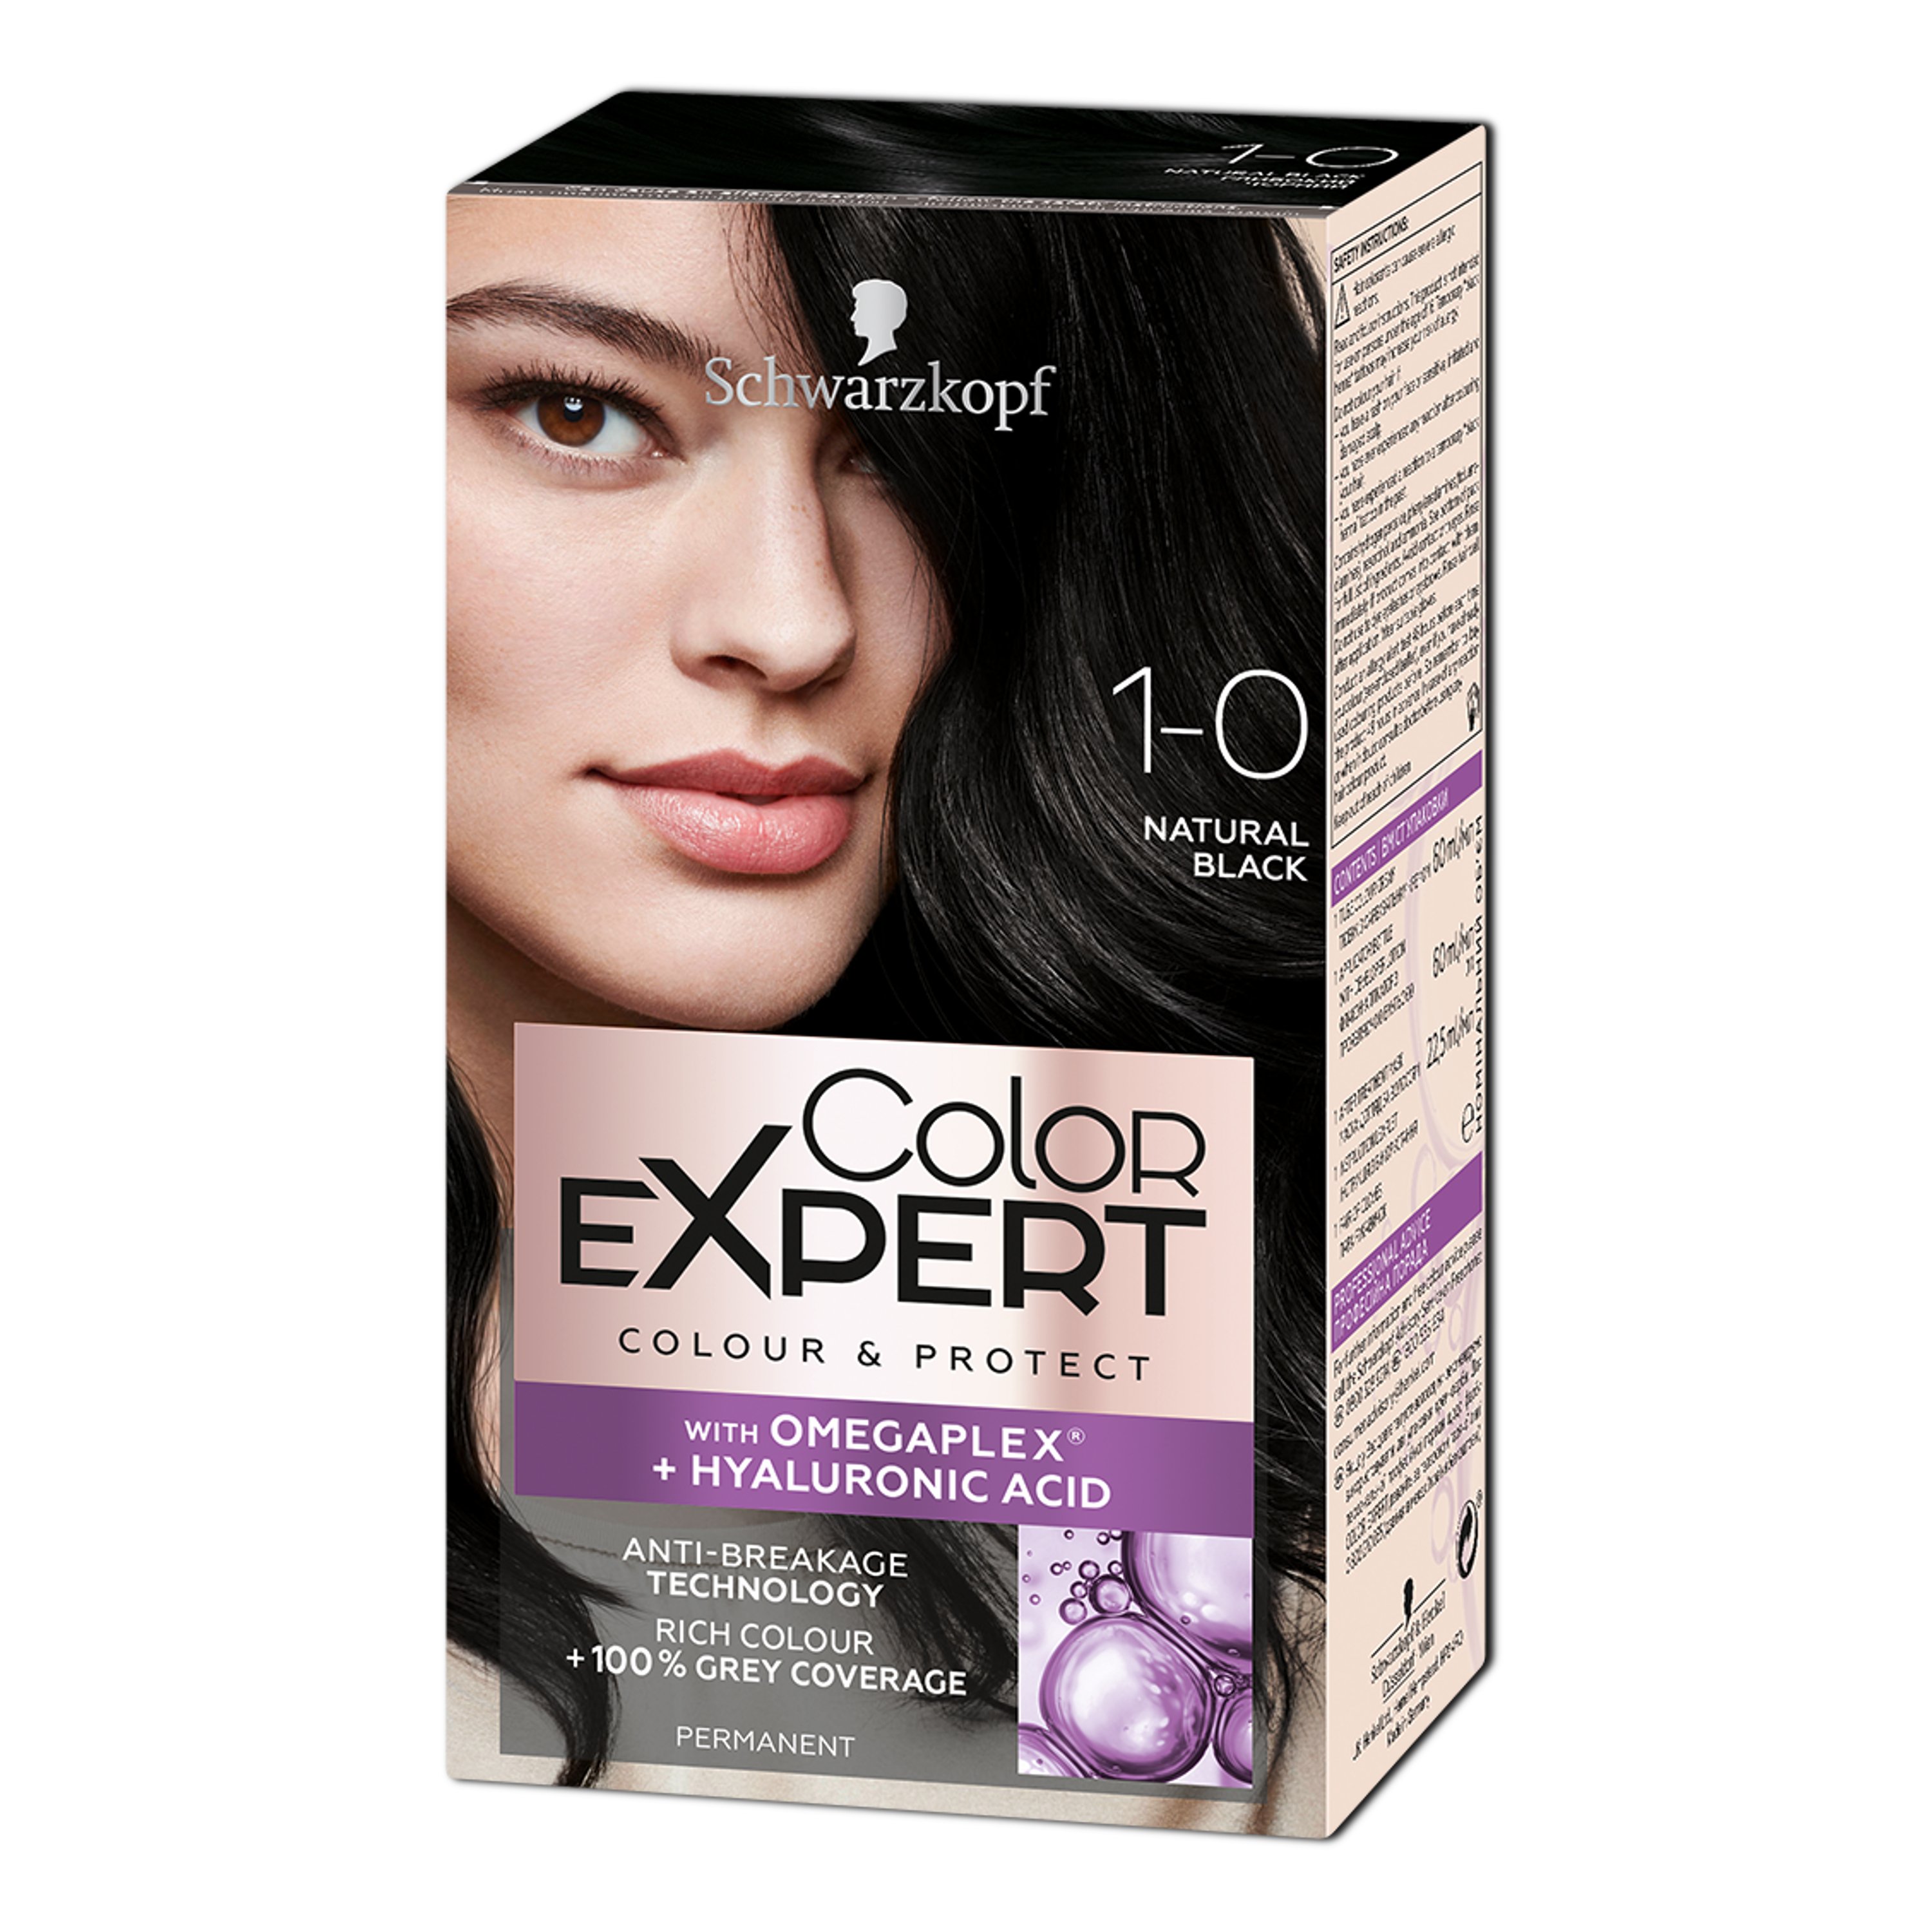 Крем-фарба для волосся Schwarzkopf Color Expert, з гіалуроновою кислотою, відтінок 1-0 (Глибокий Чорний), 142,5 мл - фото 1